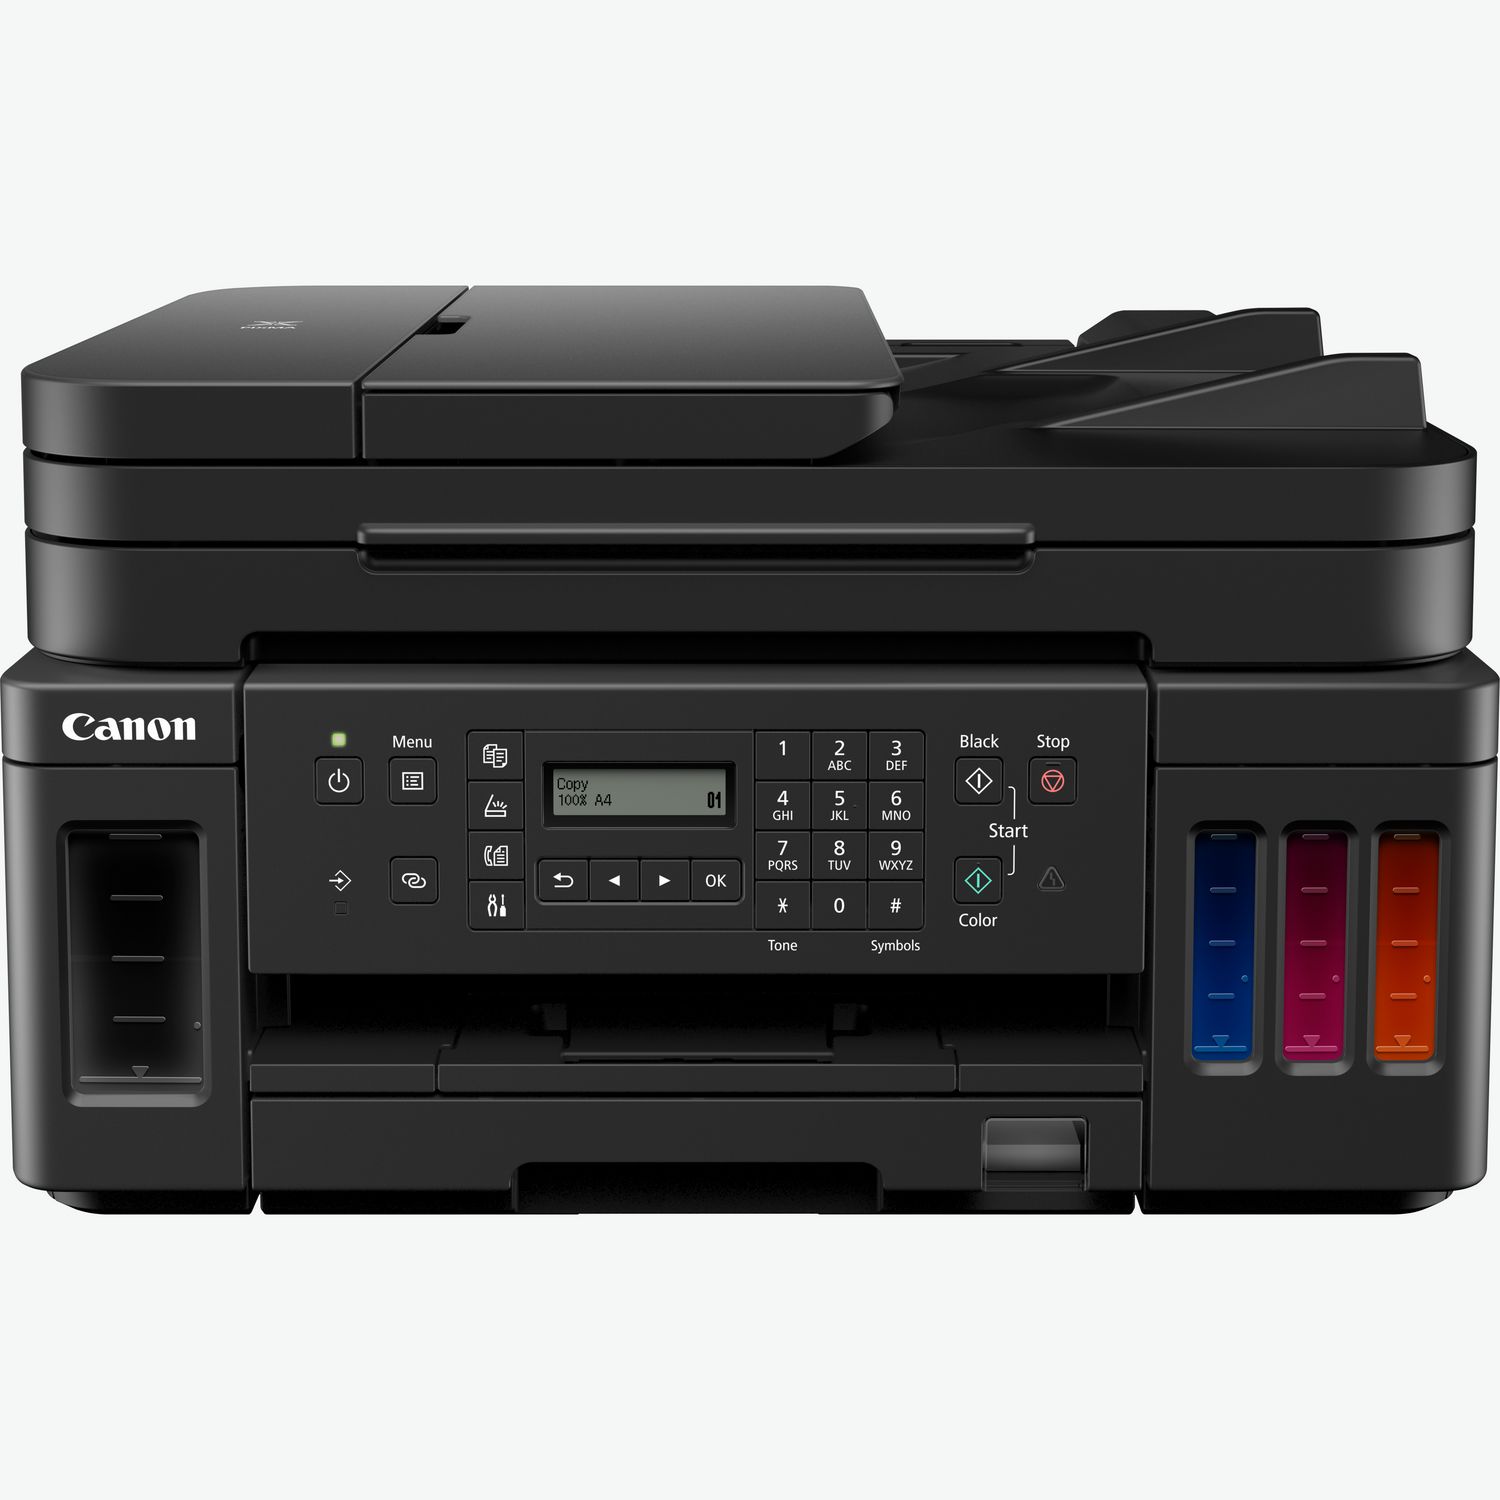 CANON - SELPHY CP1500 WH - Risoluzione stampa: 300 x 300 dpi-Stampante a  colori o monocromatica: A colori-Stampante fotografica: Sì